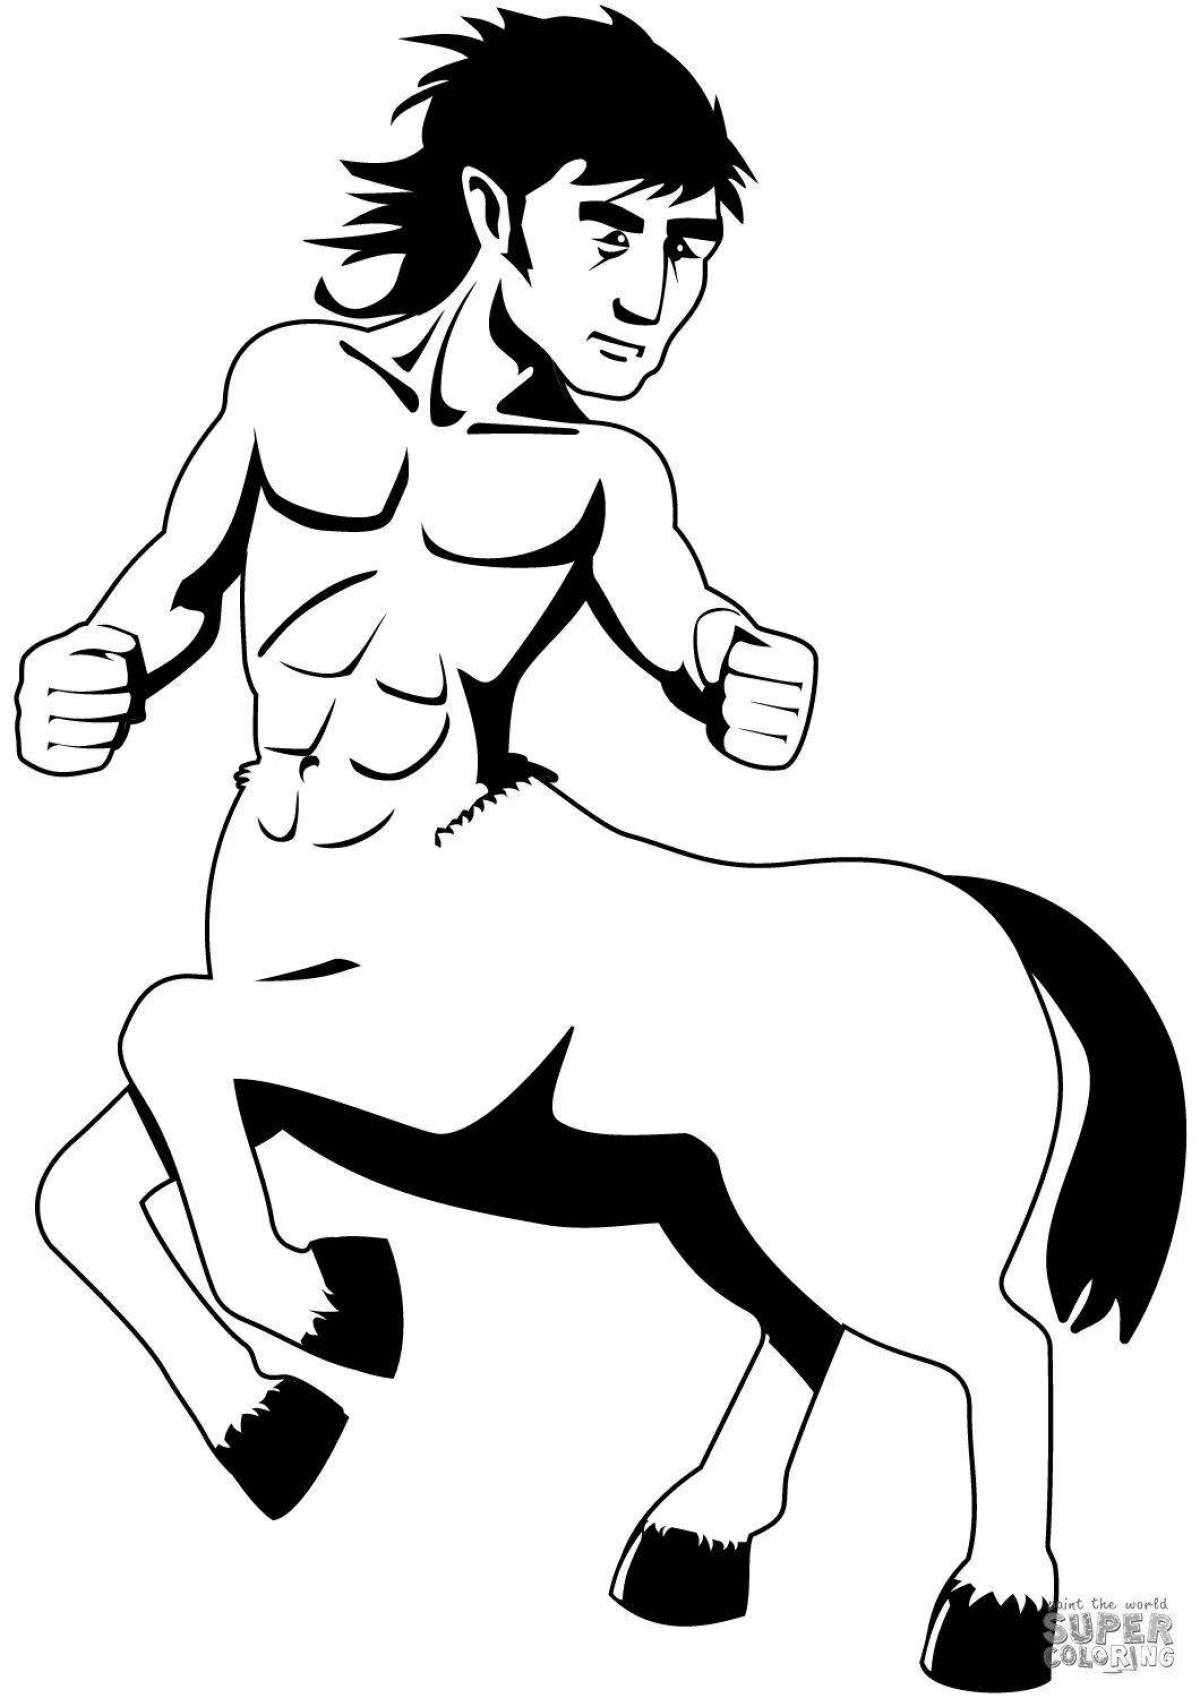 Entertaining coloring centaur for children